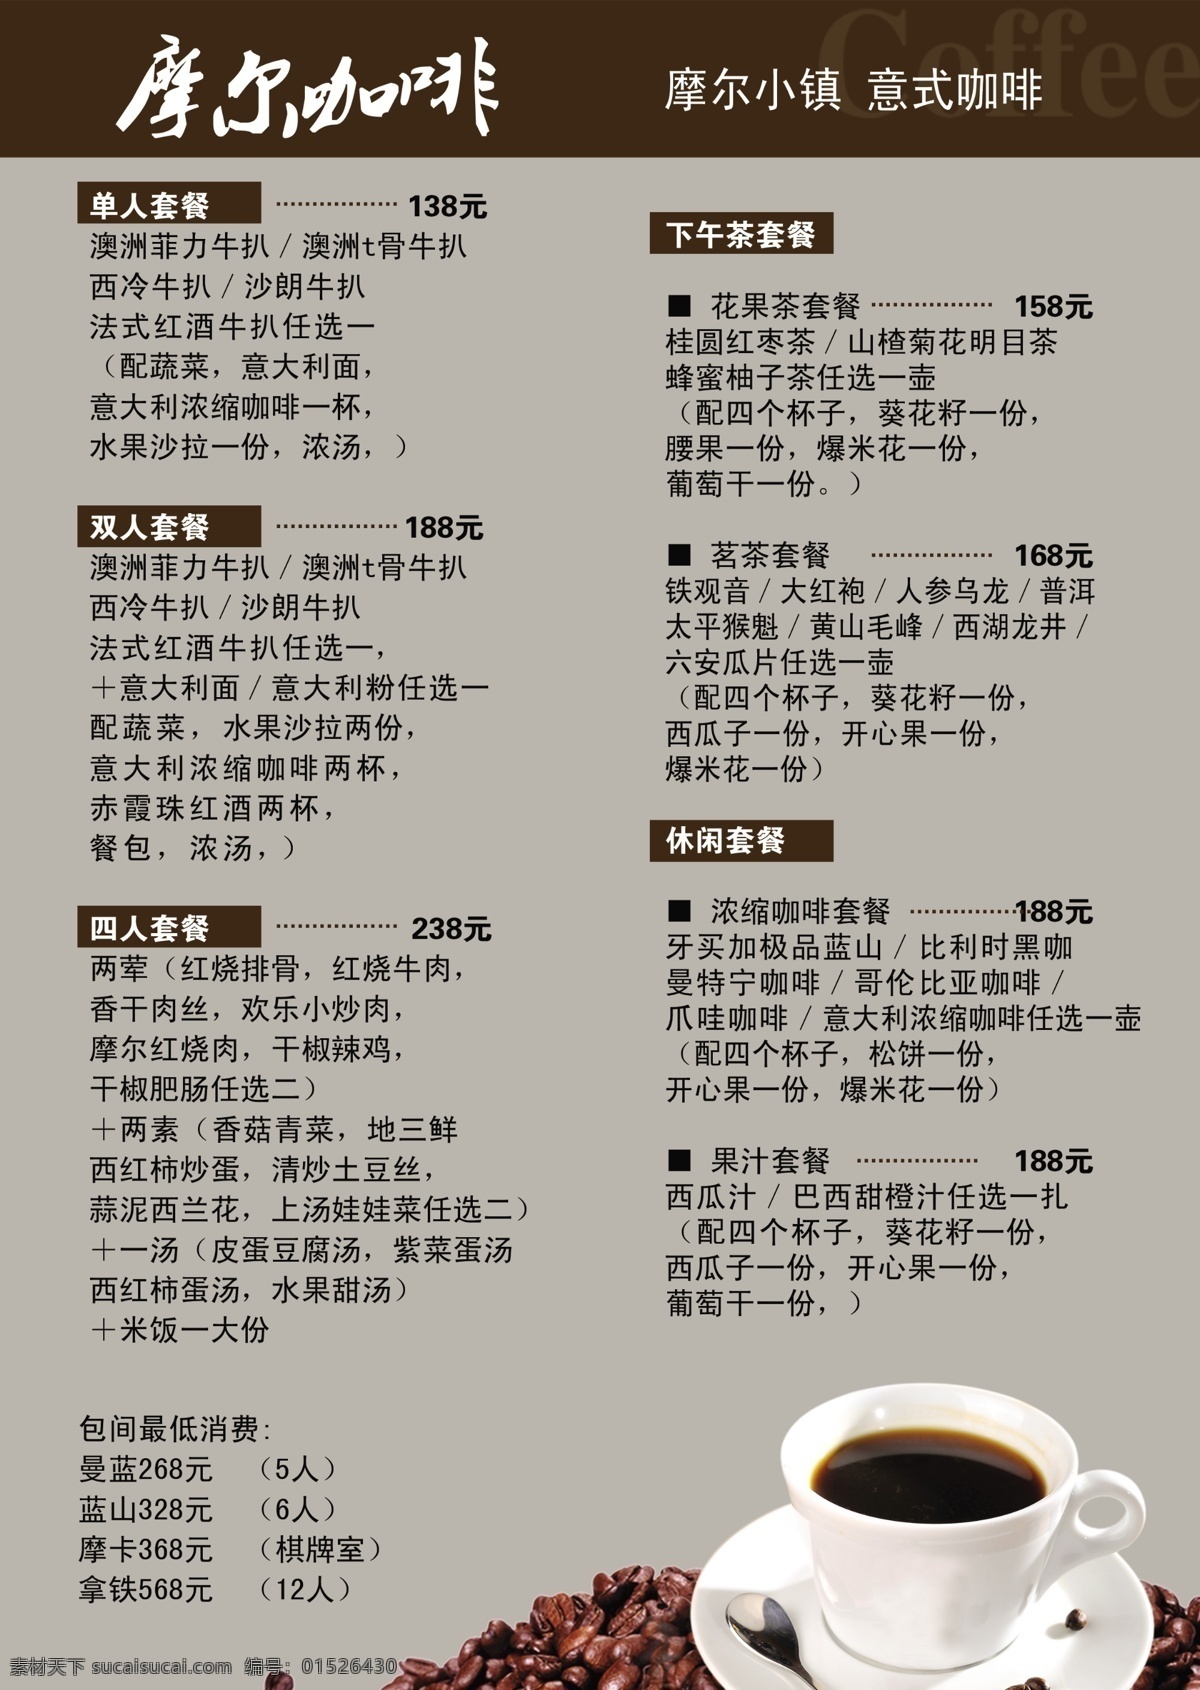 咖啡菜单 菜单 咖啡 摩尔 简约 咖啡豆 灰色